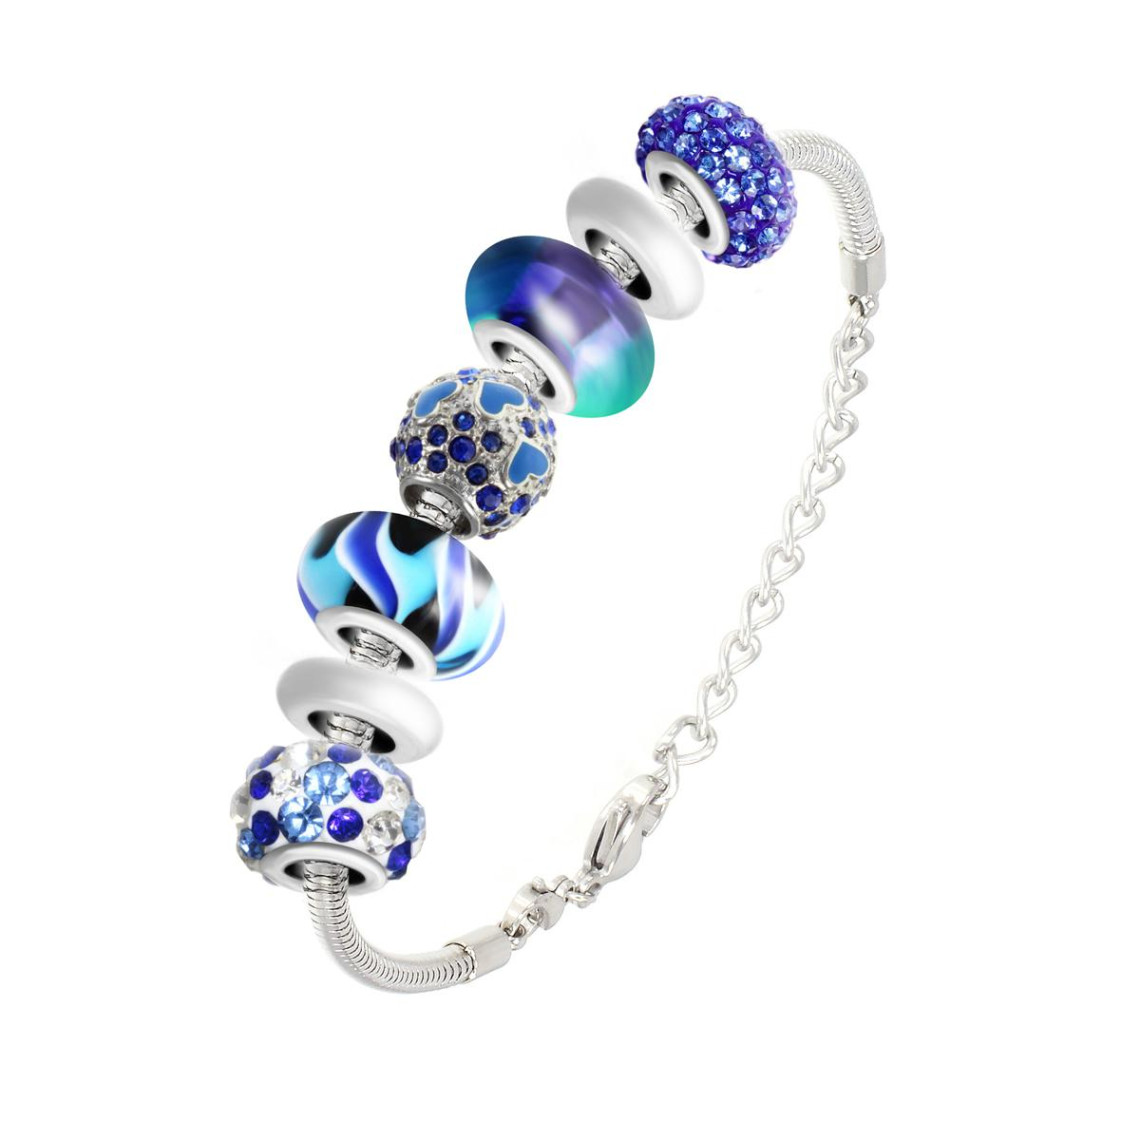 bracelet de charms perles bleus et acier sc crystal sb050+112+43+93+209-bleu+146+43+34